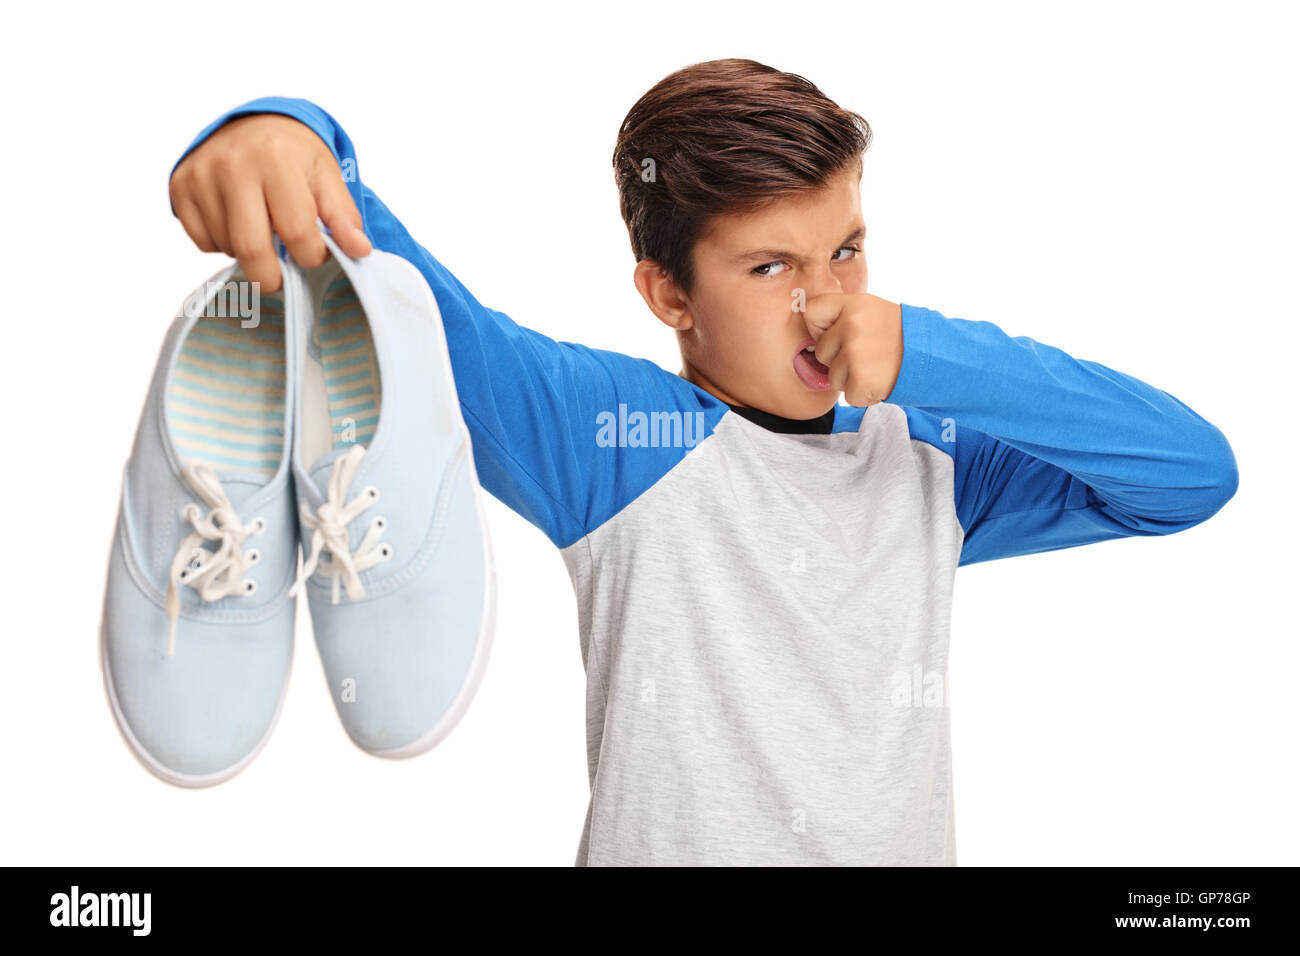 Disgustato boy tenendo un paio di scarpe maleodoranti isolati su sfondo bianco Foto Stock